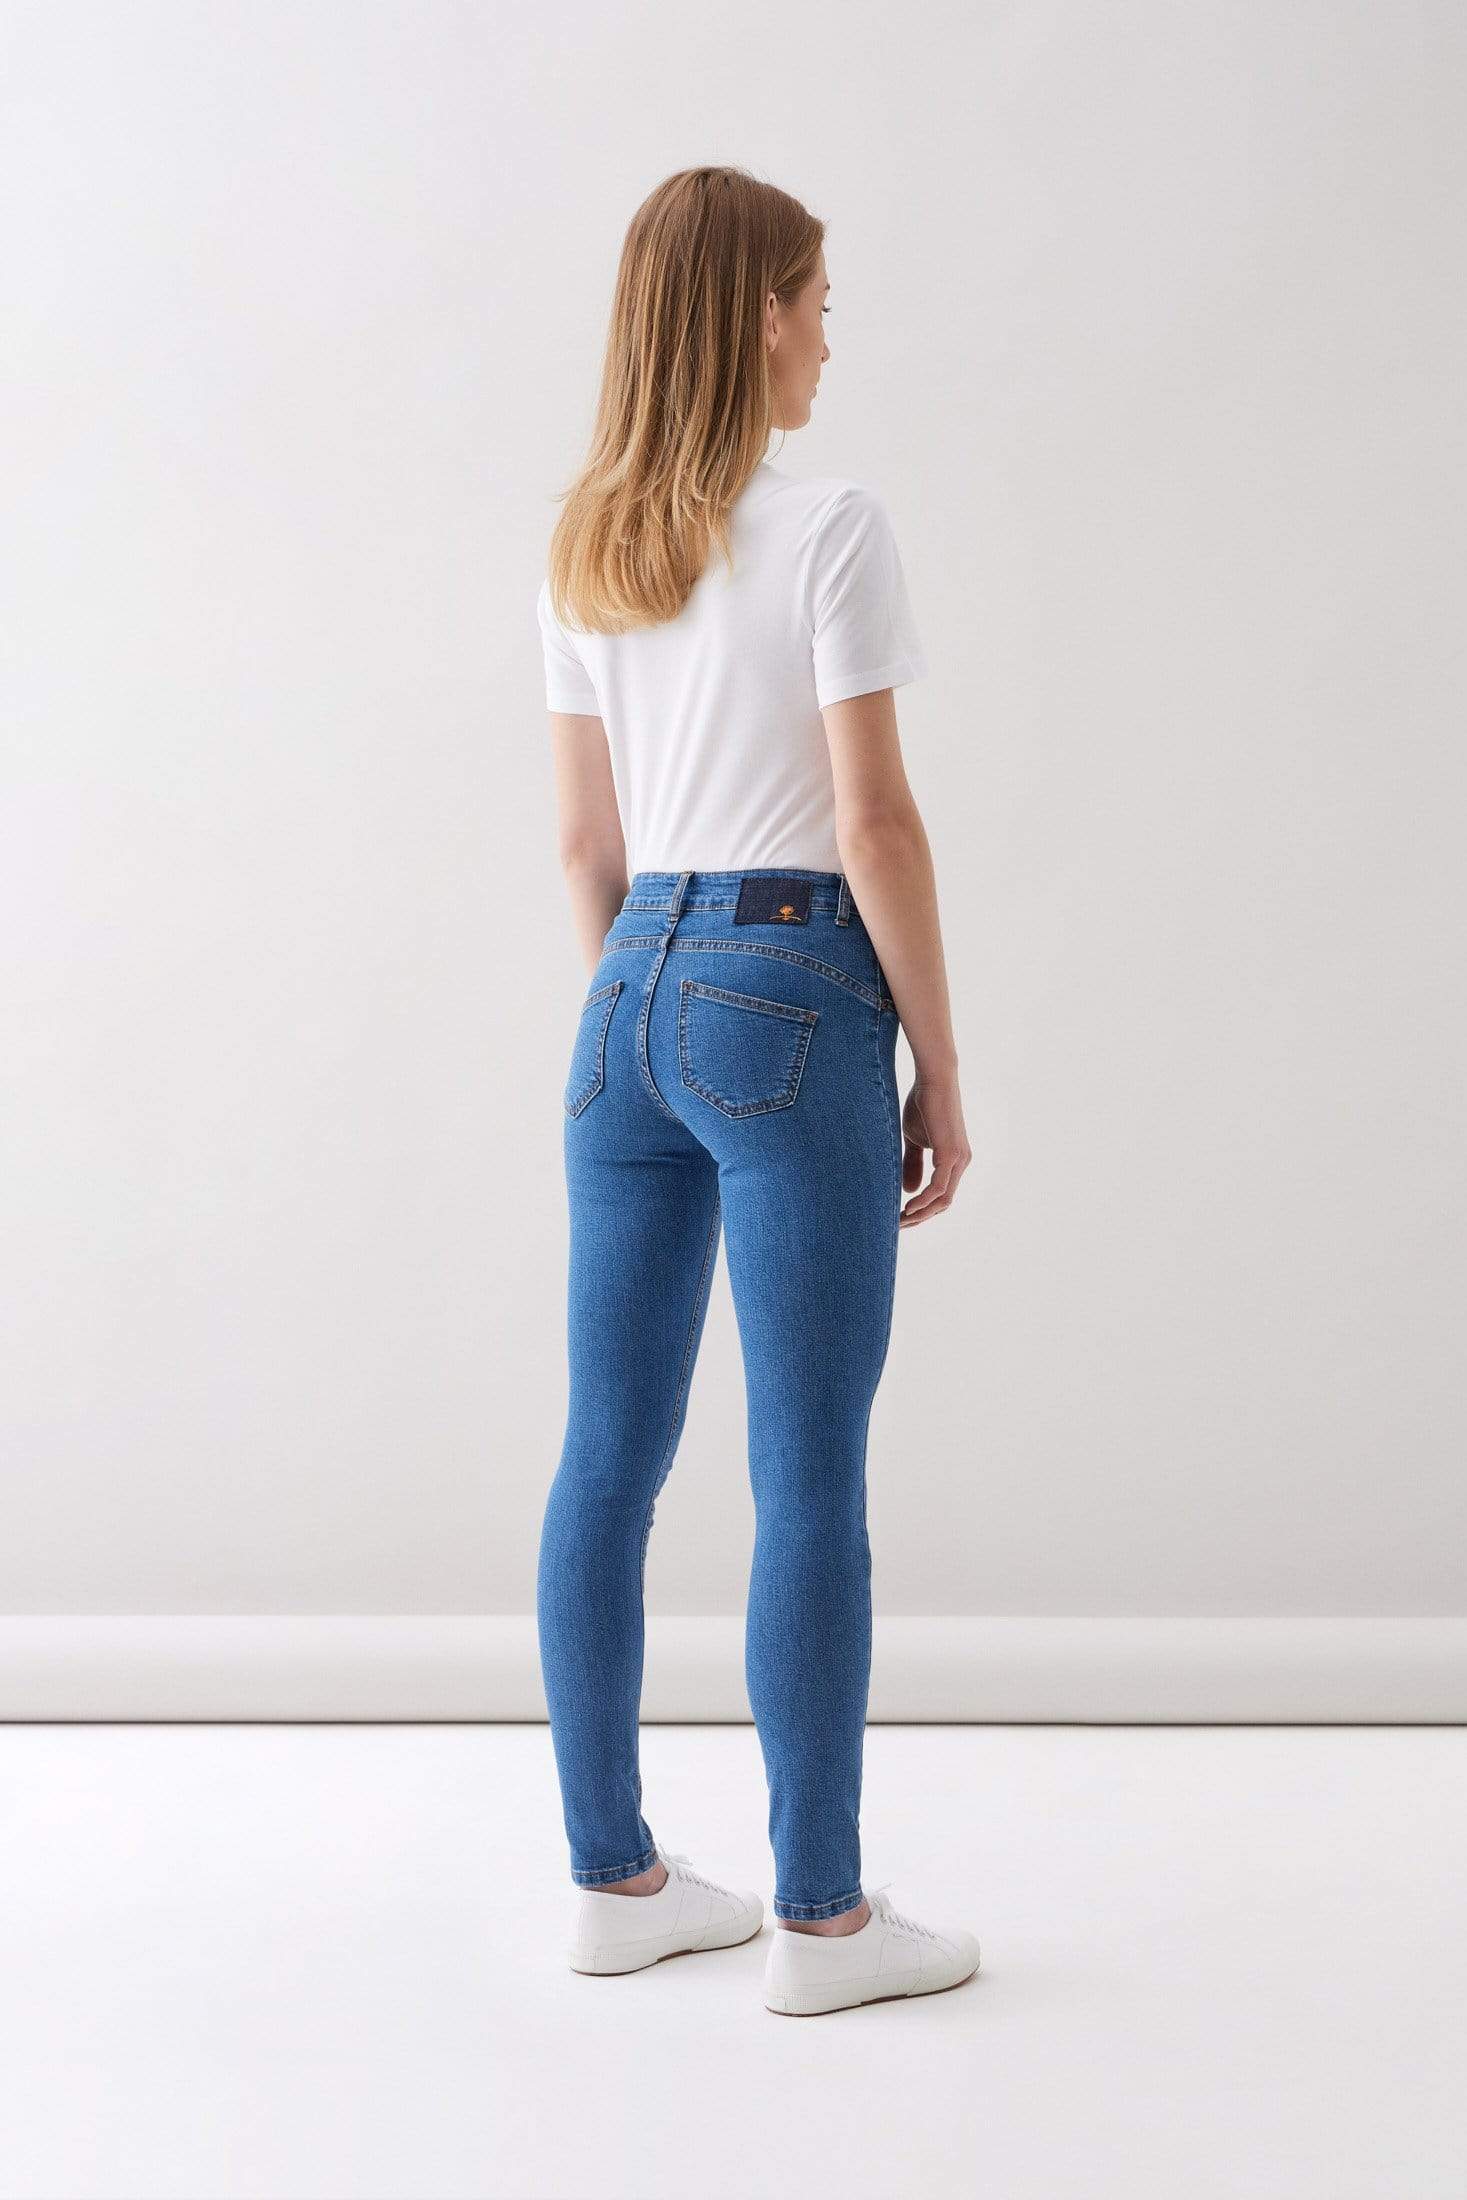 Par.co Fashion SRL pantalons Lily Light Skinny Jeans en cotó orgànic moda ètica sostenible